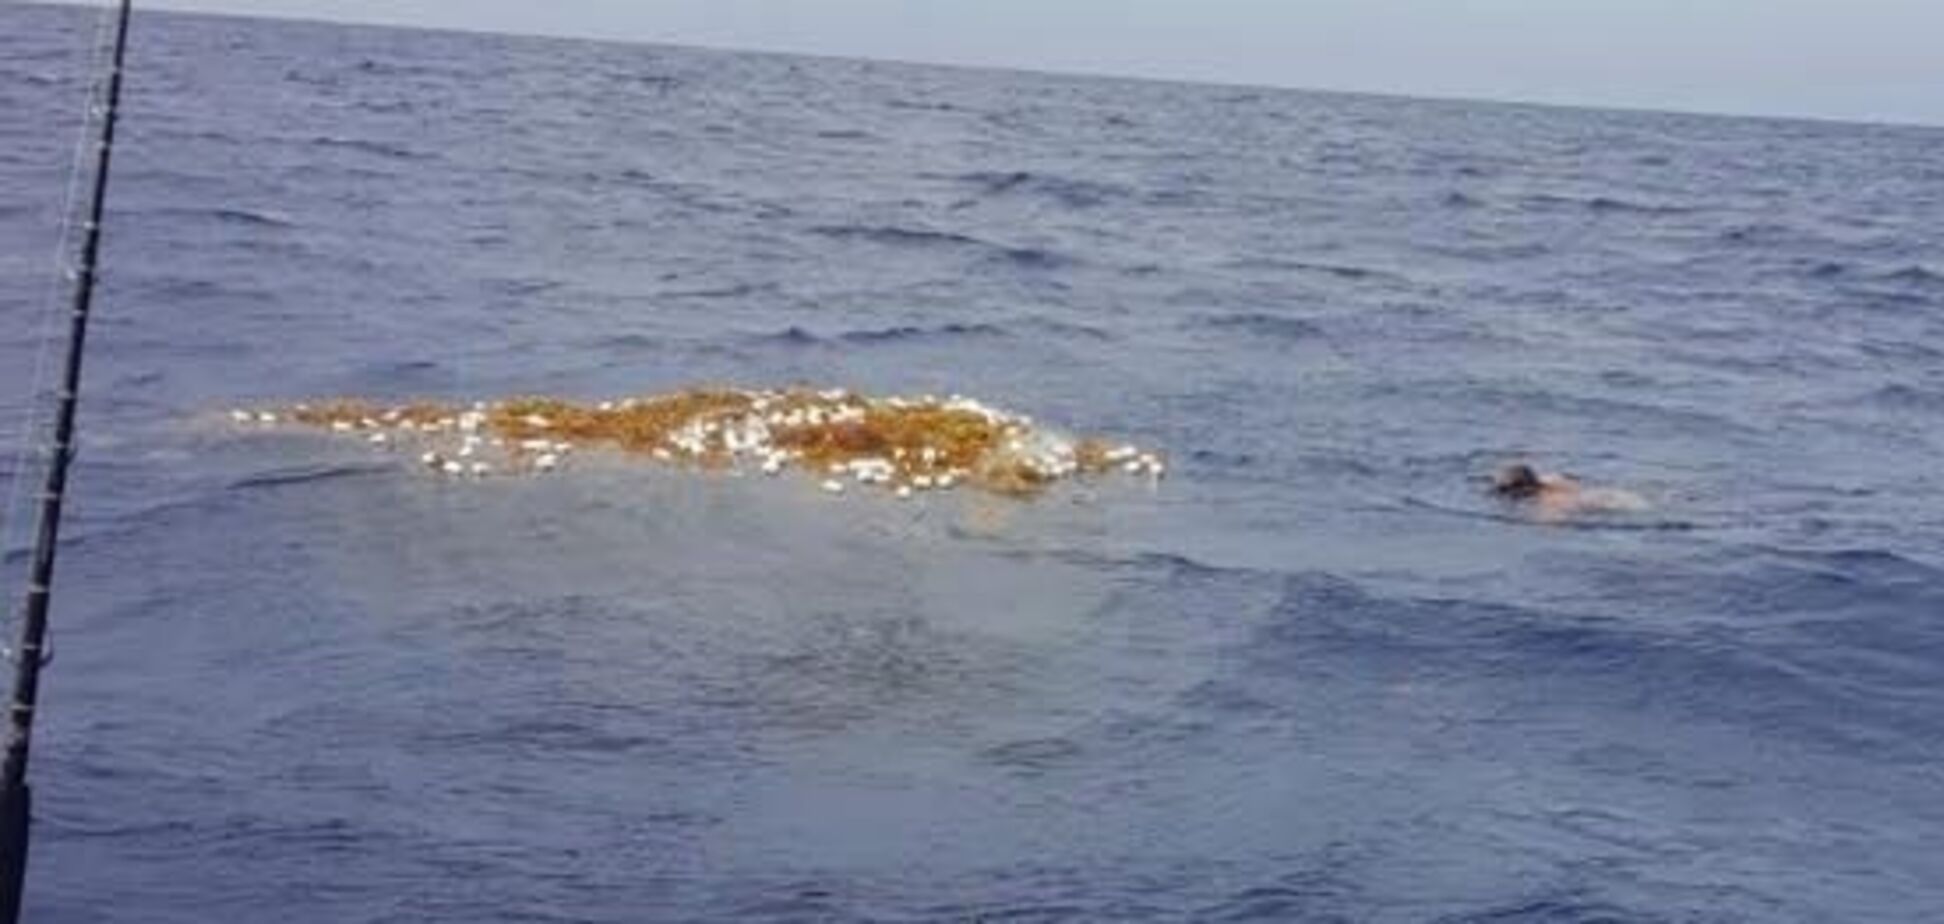 Тенета смерті: У Карибському морі знайдена купа з десятків гниючих акул